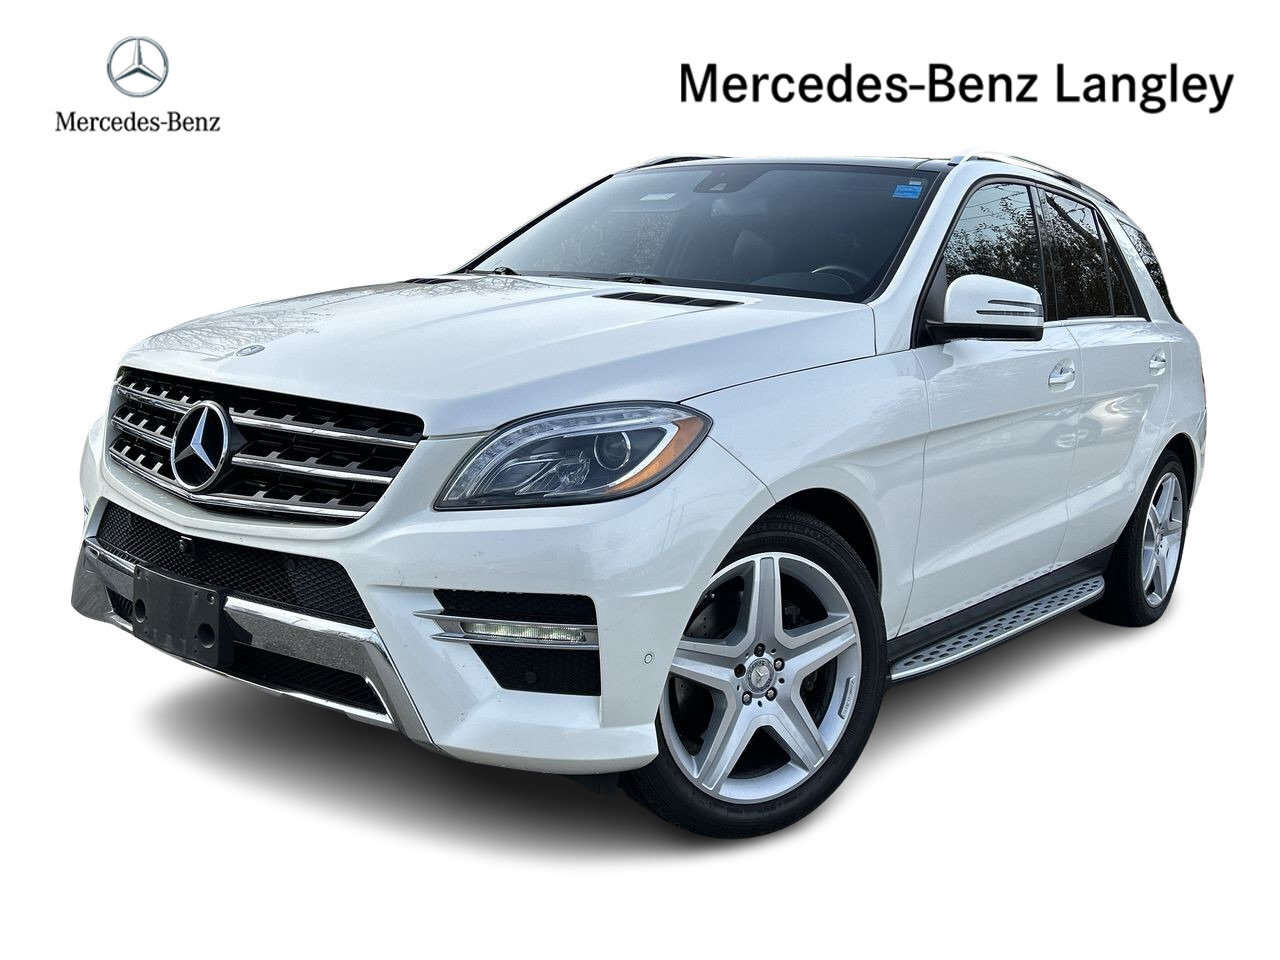 2014 Mercedes-Benz ML350 BlueTEC 4MATIC full load! Extra Clean!